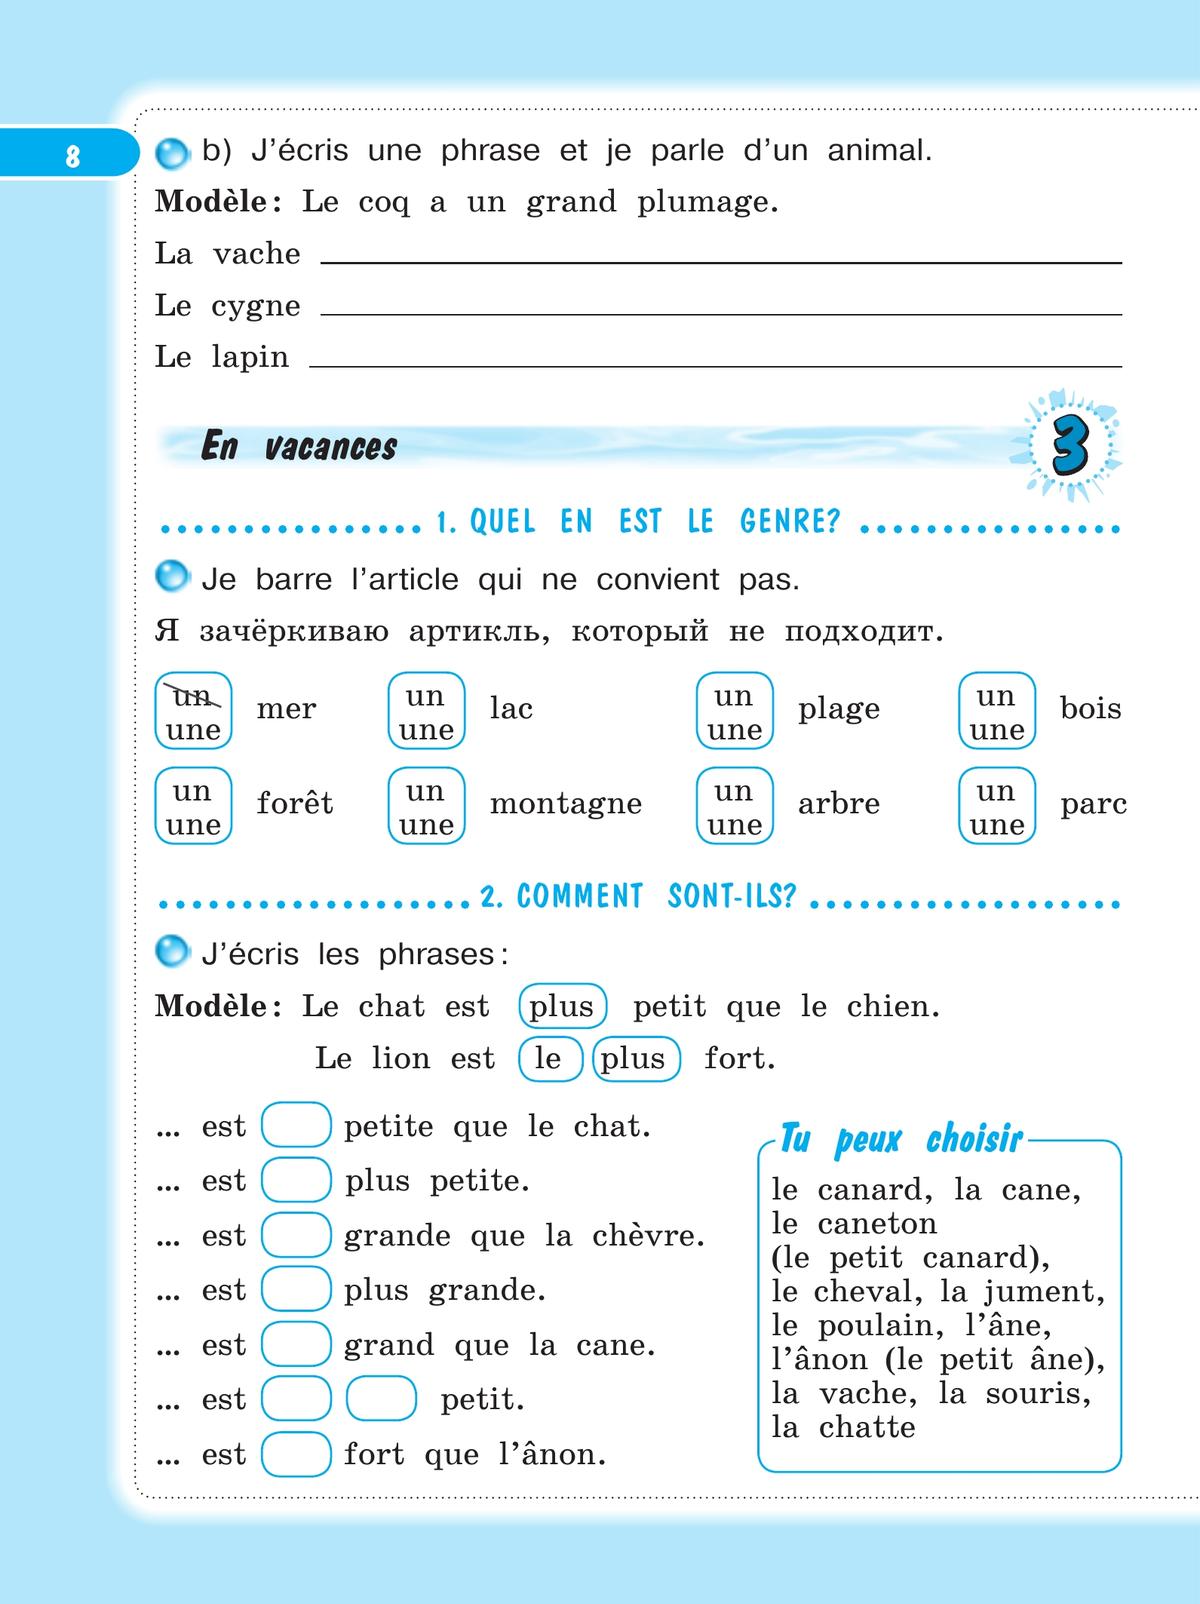 Французский язык. Рабочая тетрадь. 4 класс 7